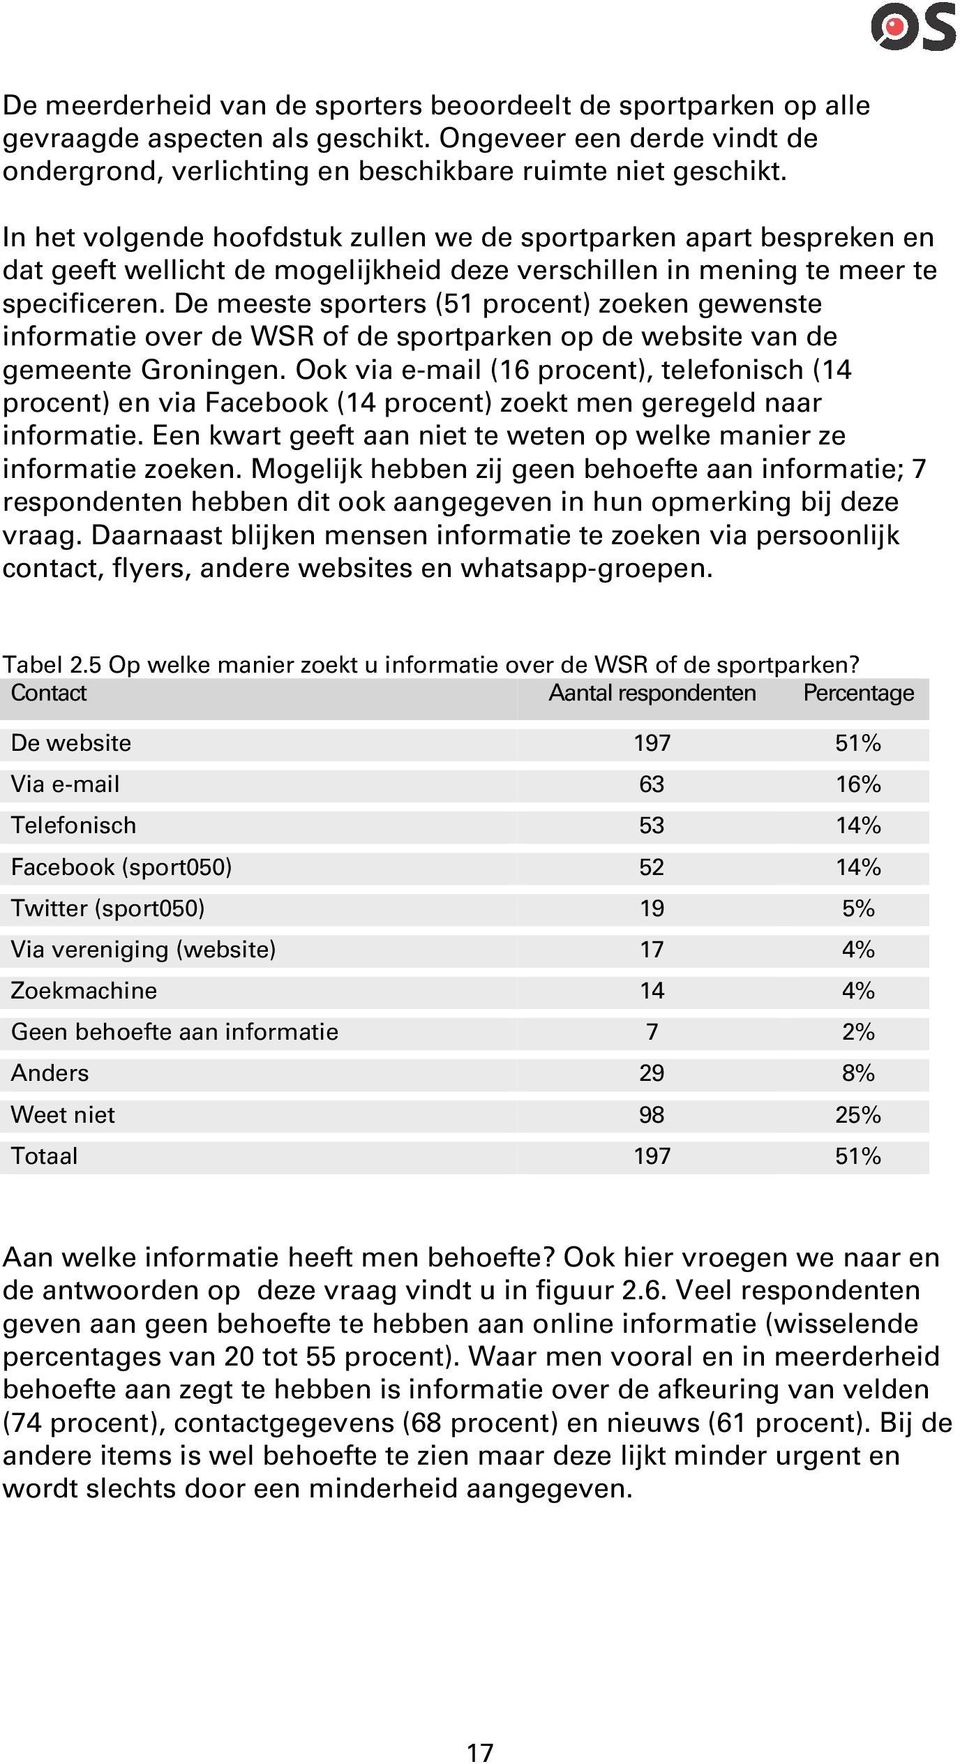 De meeste sporters (51 procent) zoeken gewenste informatie over de WSR of de sportparken op de website van de gemeente Groningen.